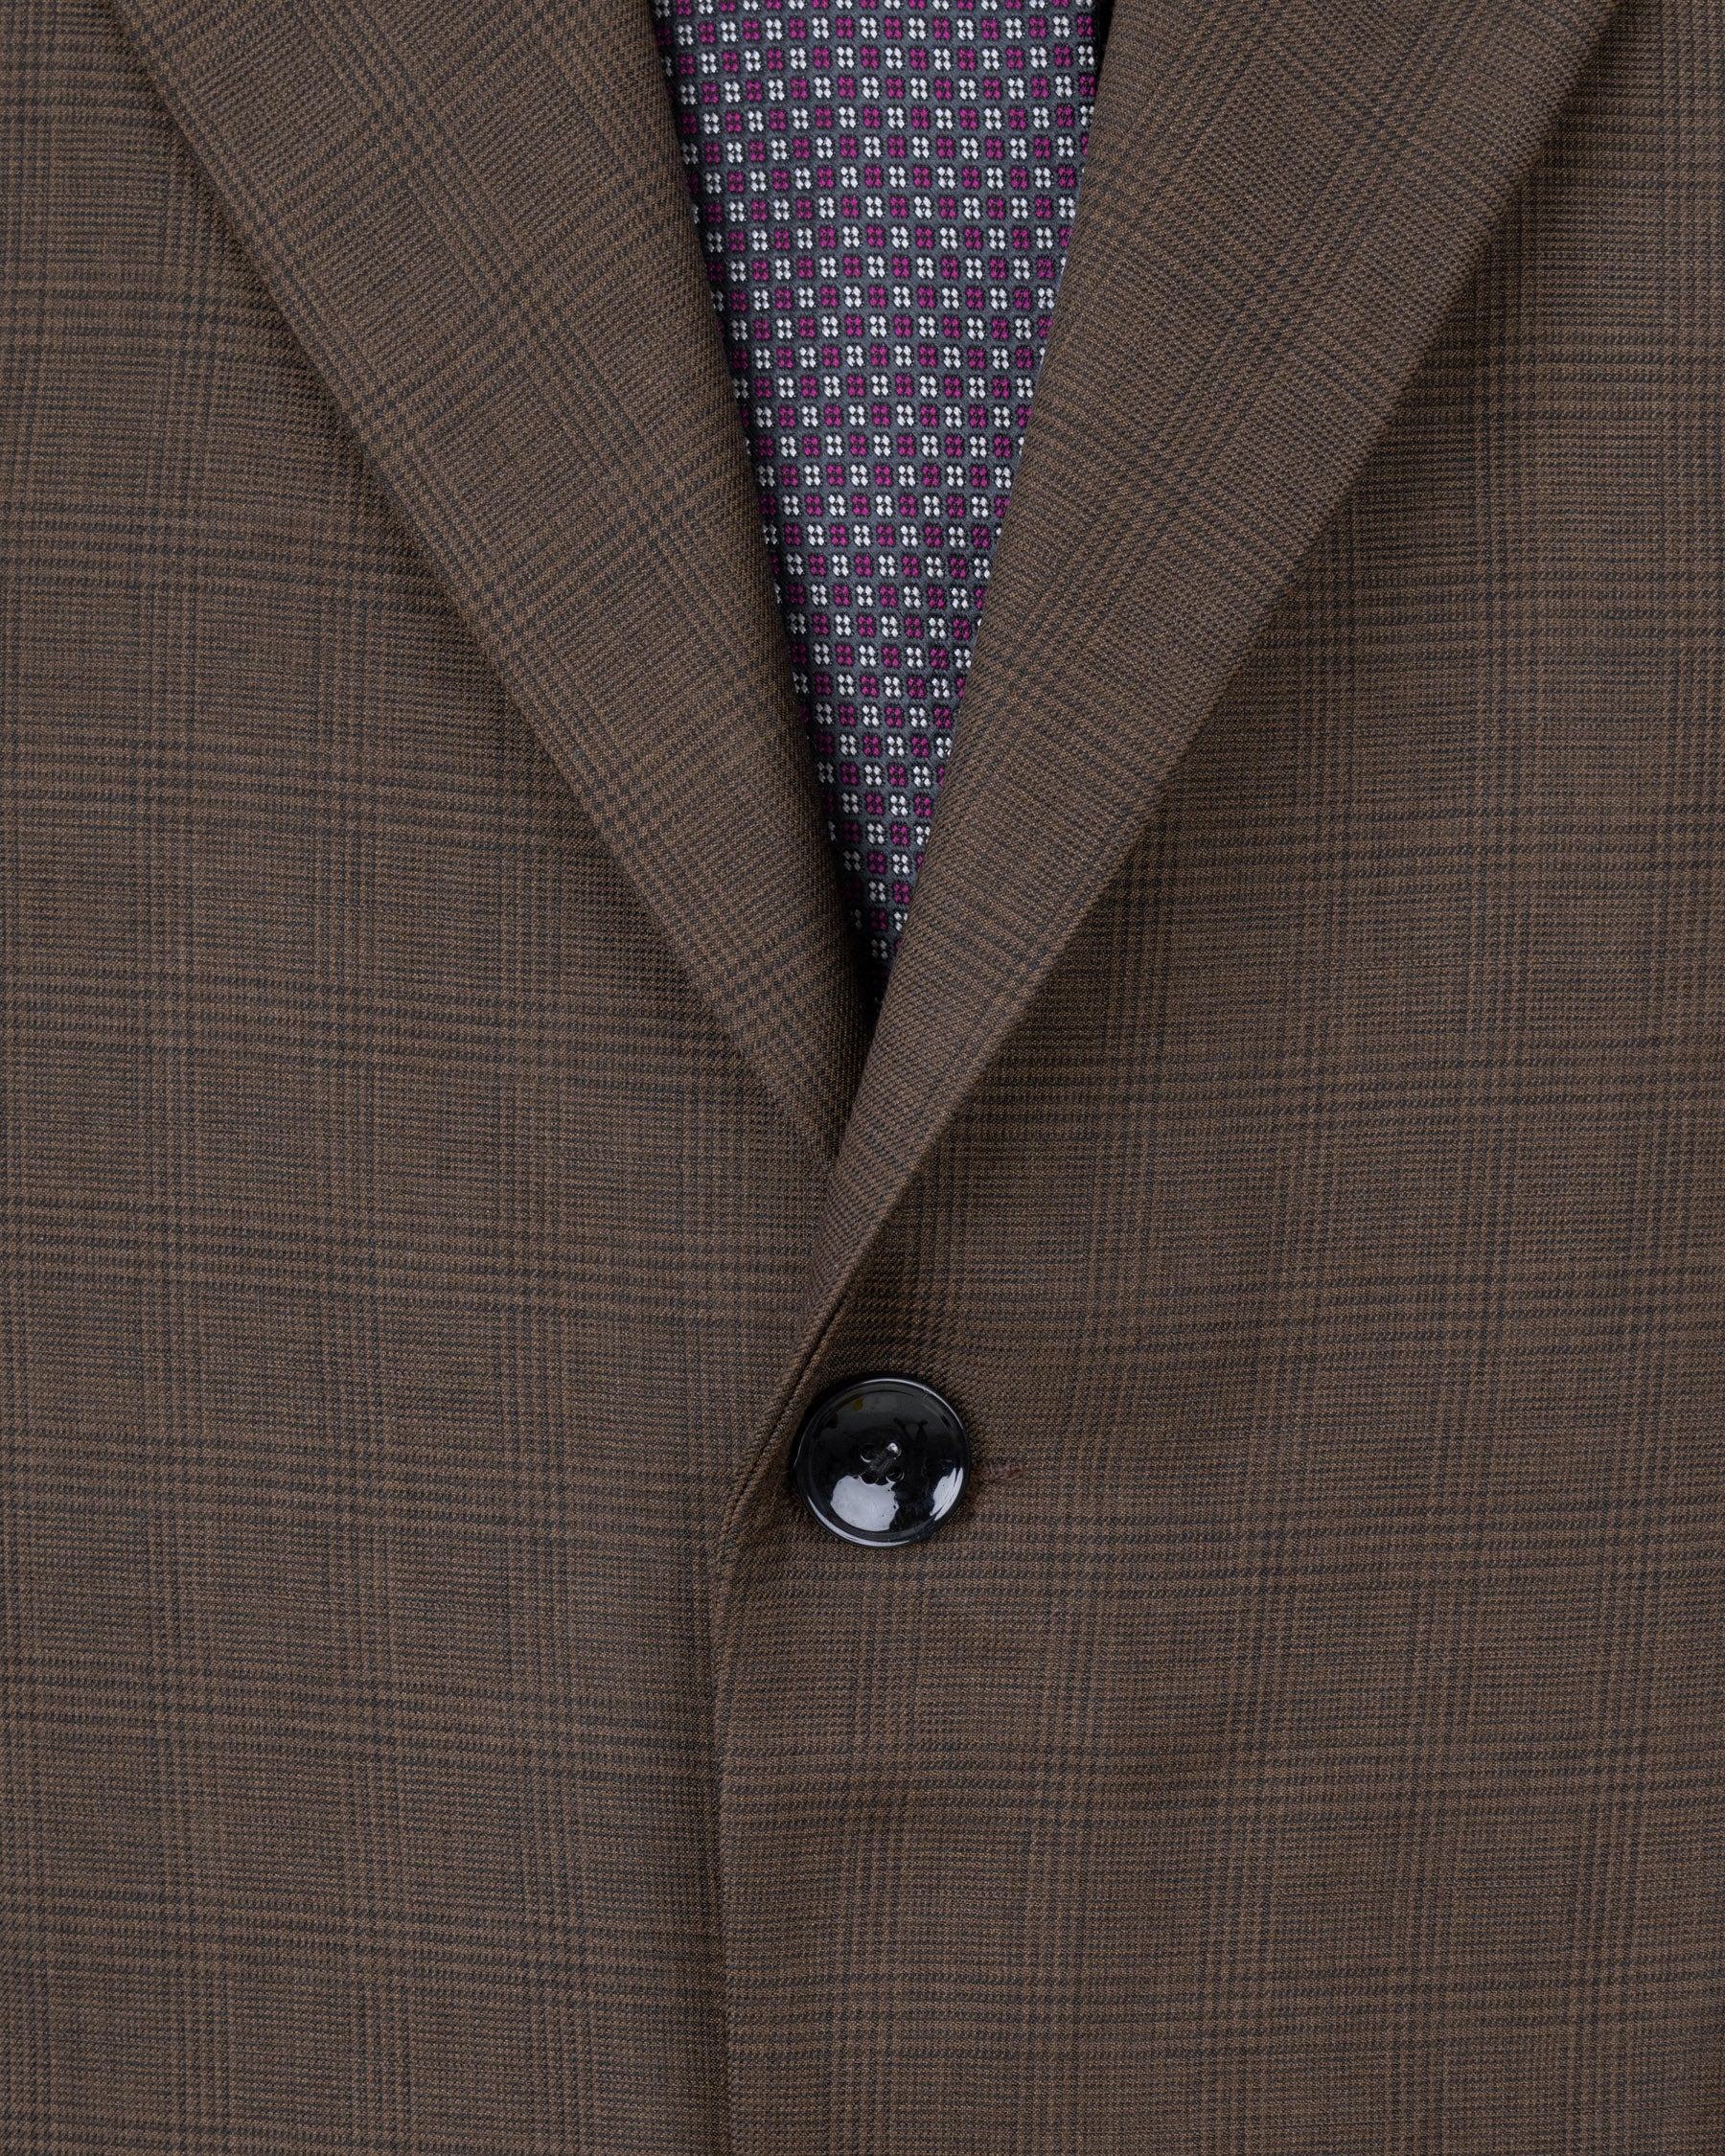 Irish Coffee Brown Plaid Suit